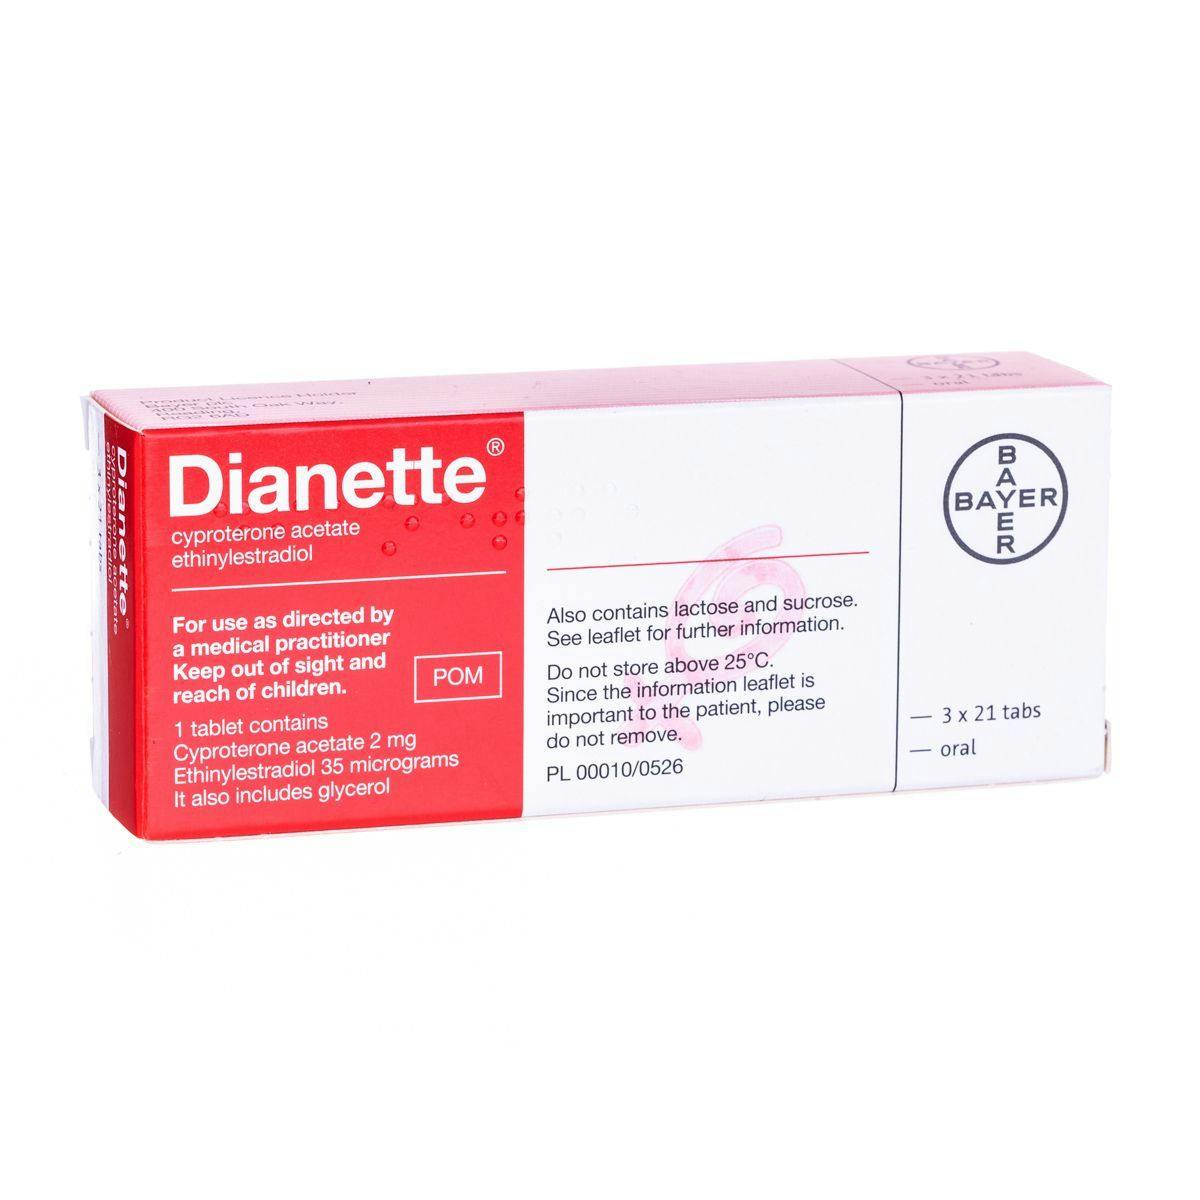 Dianette / Diane 35